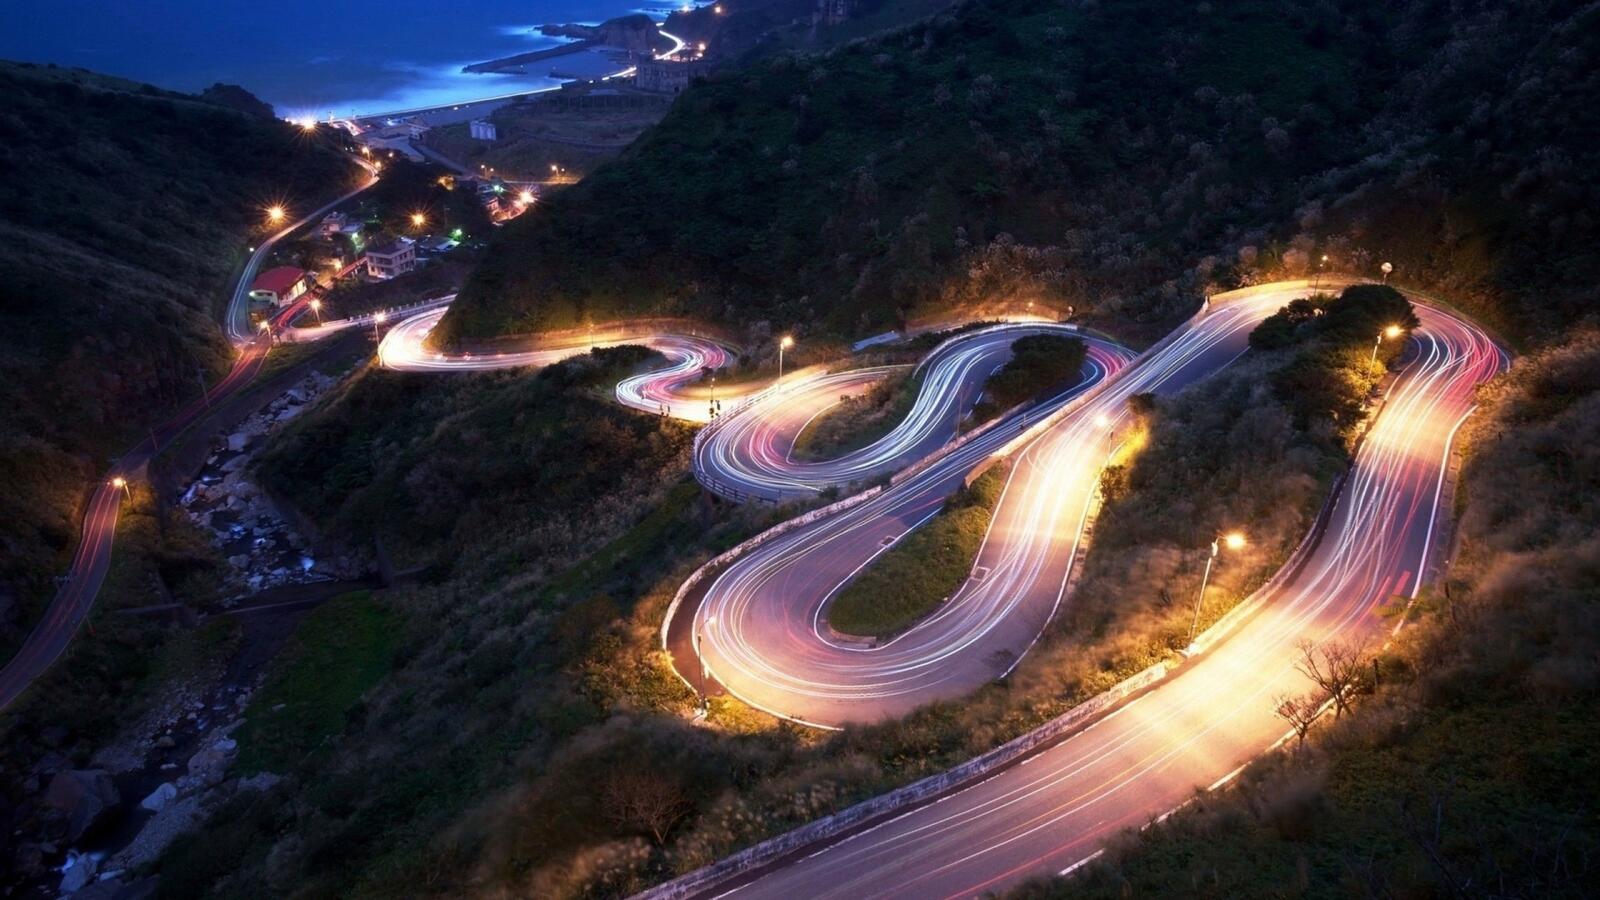 Бесплатное фото Ночная извилистая дорога идущая по склону горы